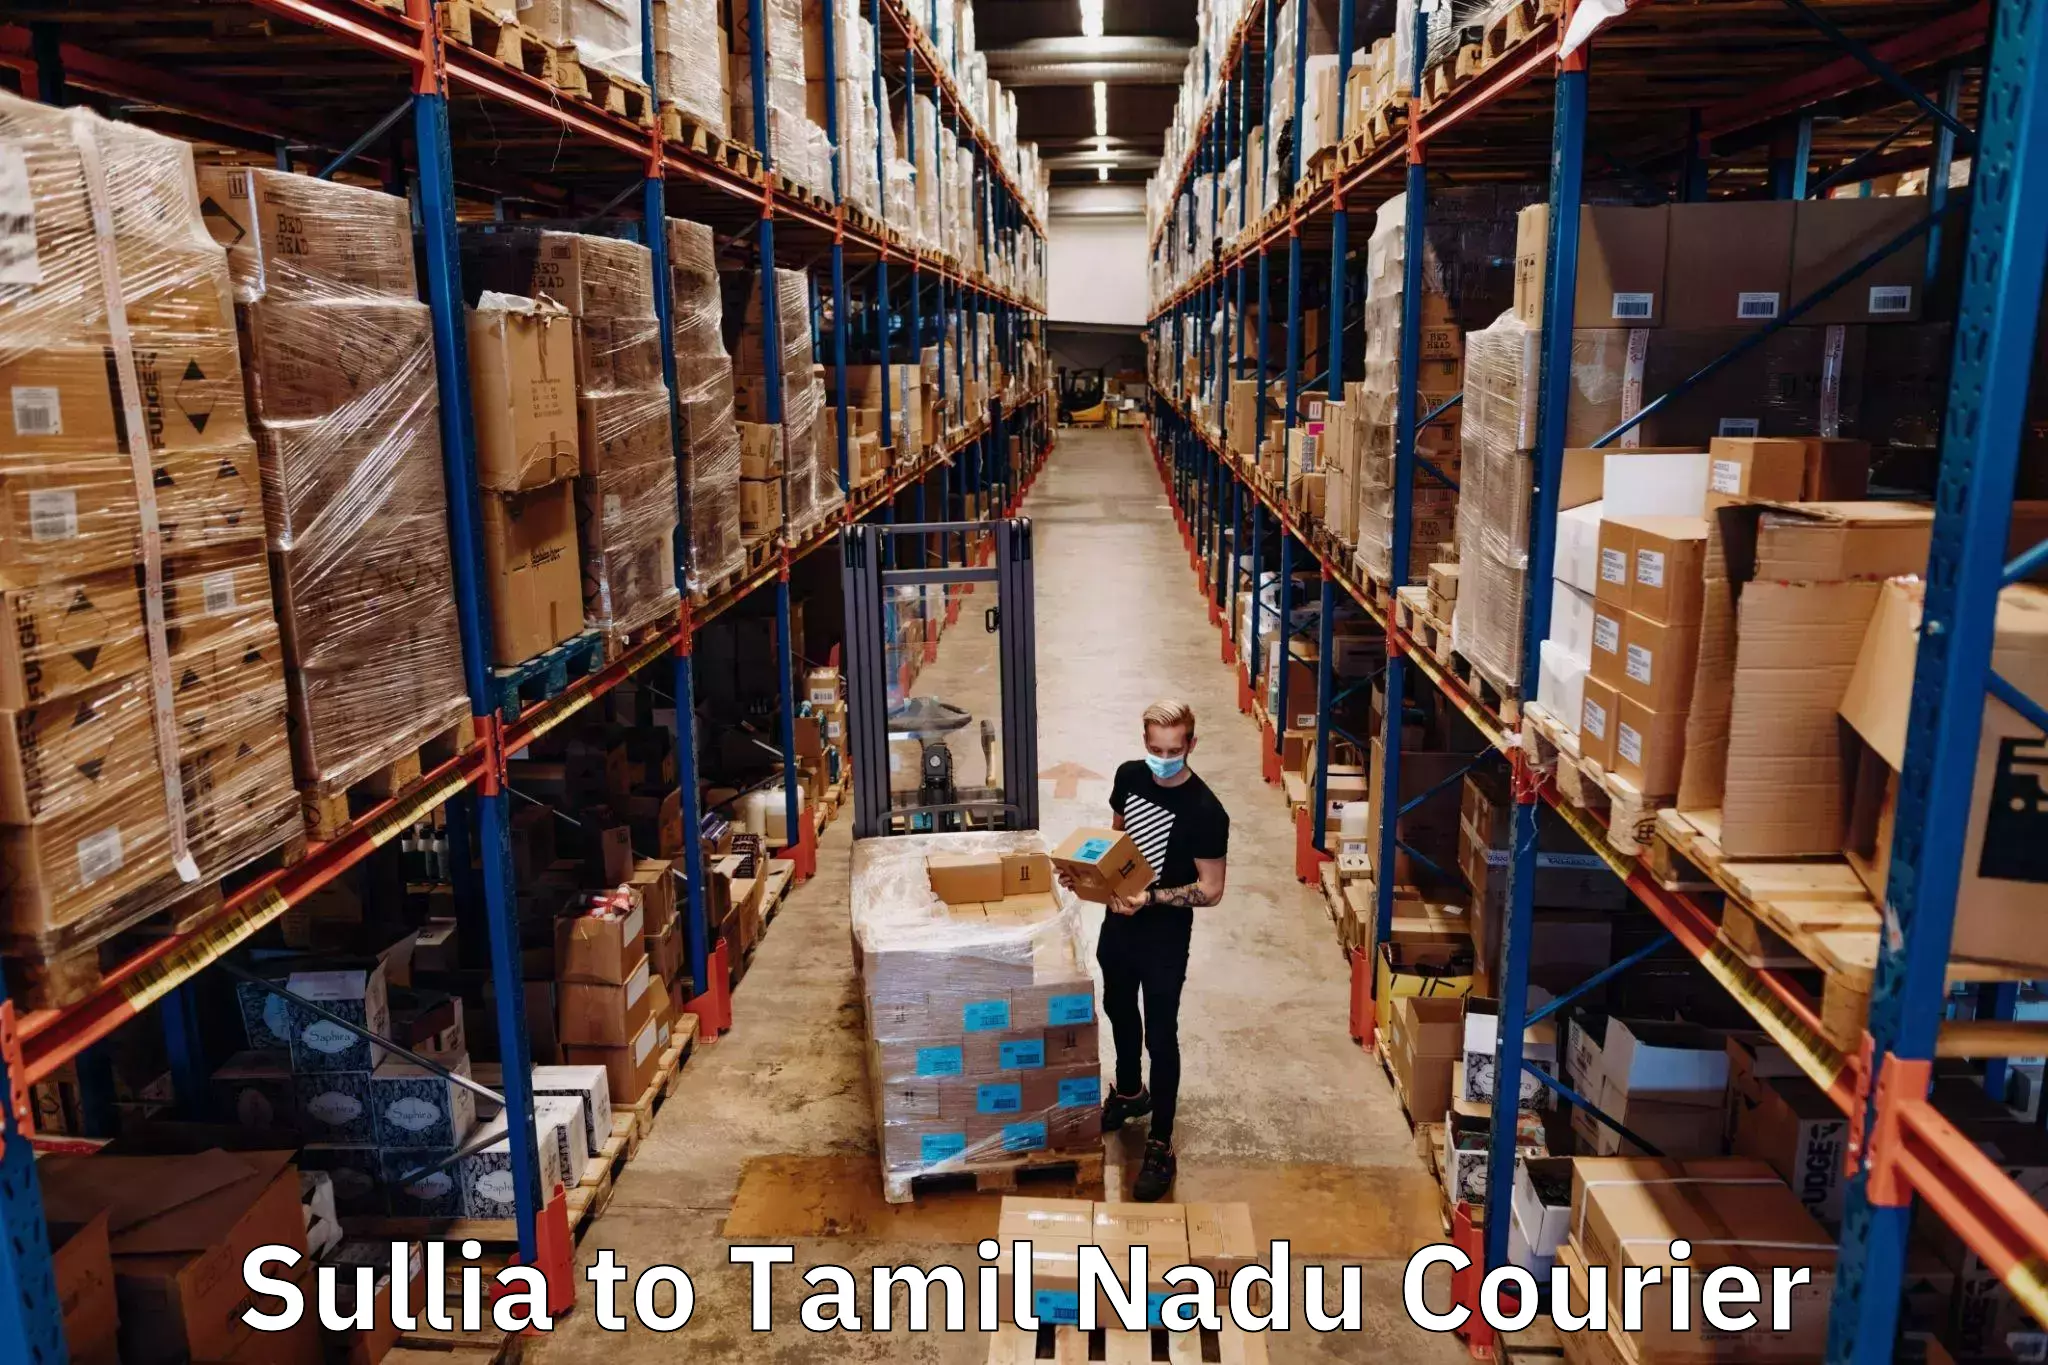 Courier service booking Sullia to Villupuram